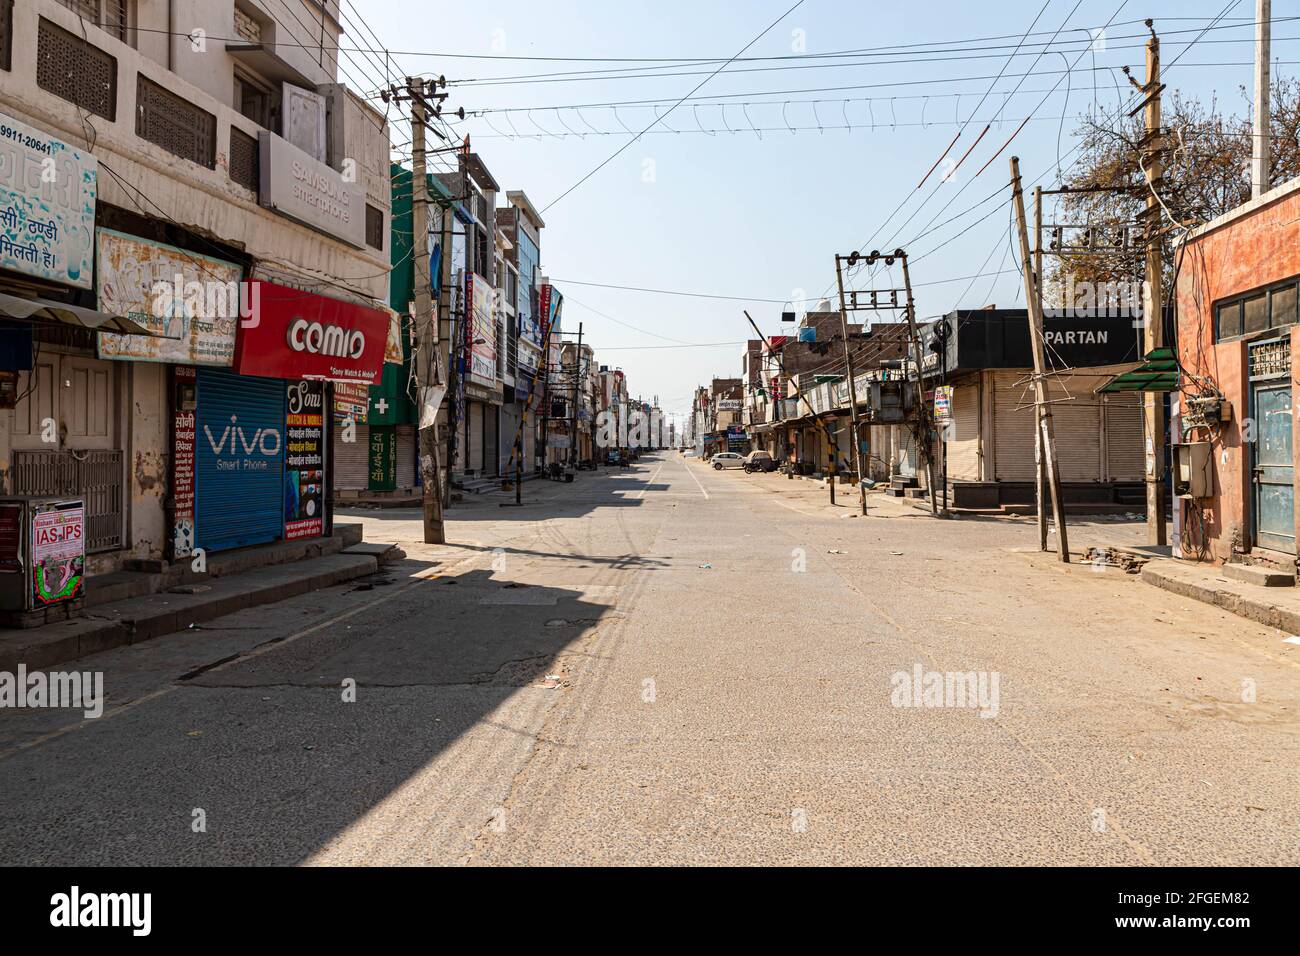 Strade vuote e negozi chiusi in india durante il blocco per combattere la diffusione del virus della corona COVID 19. Foto Stock